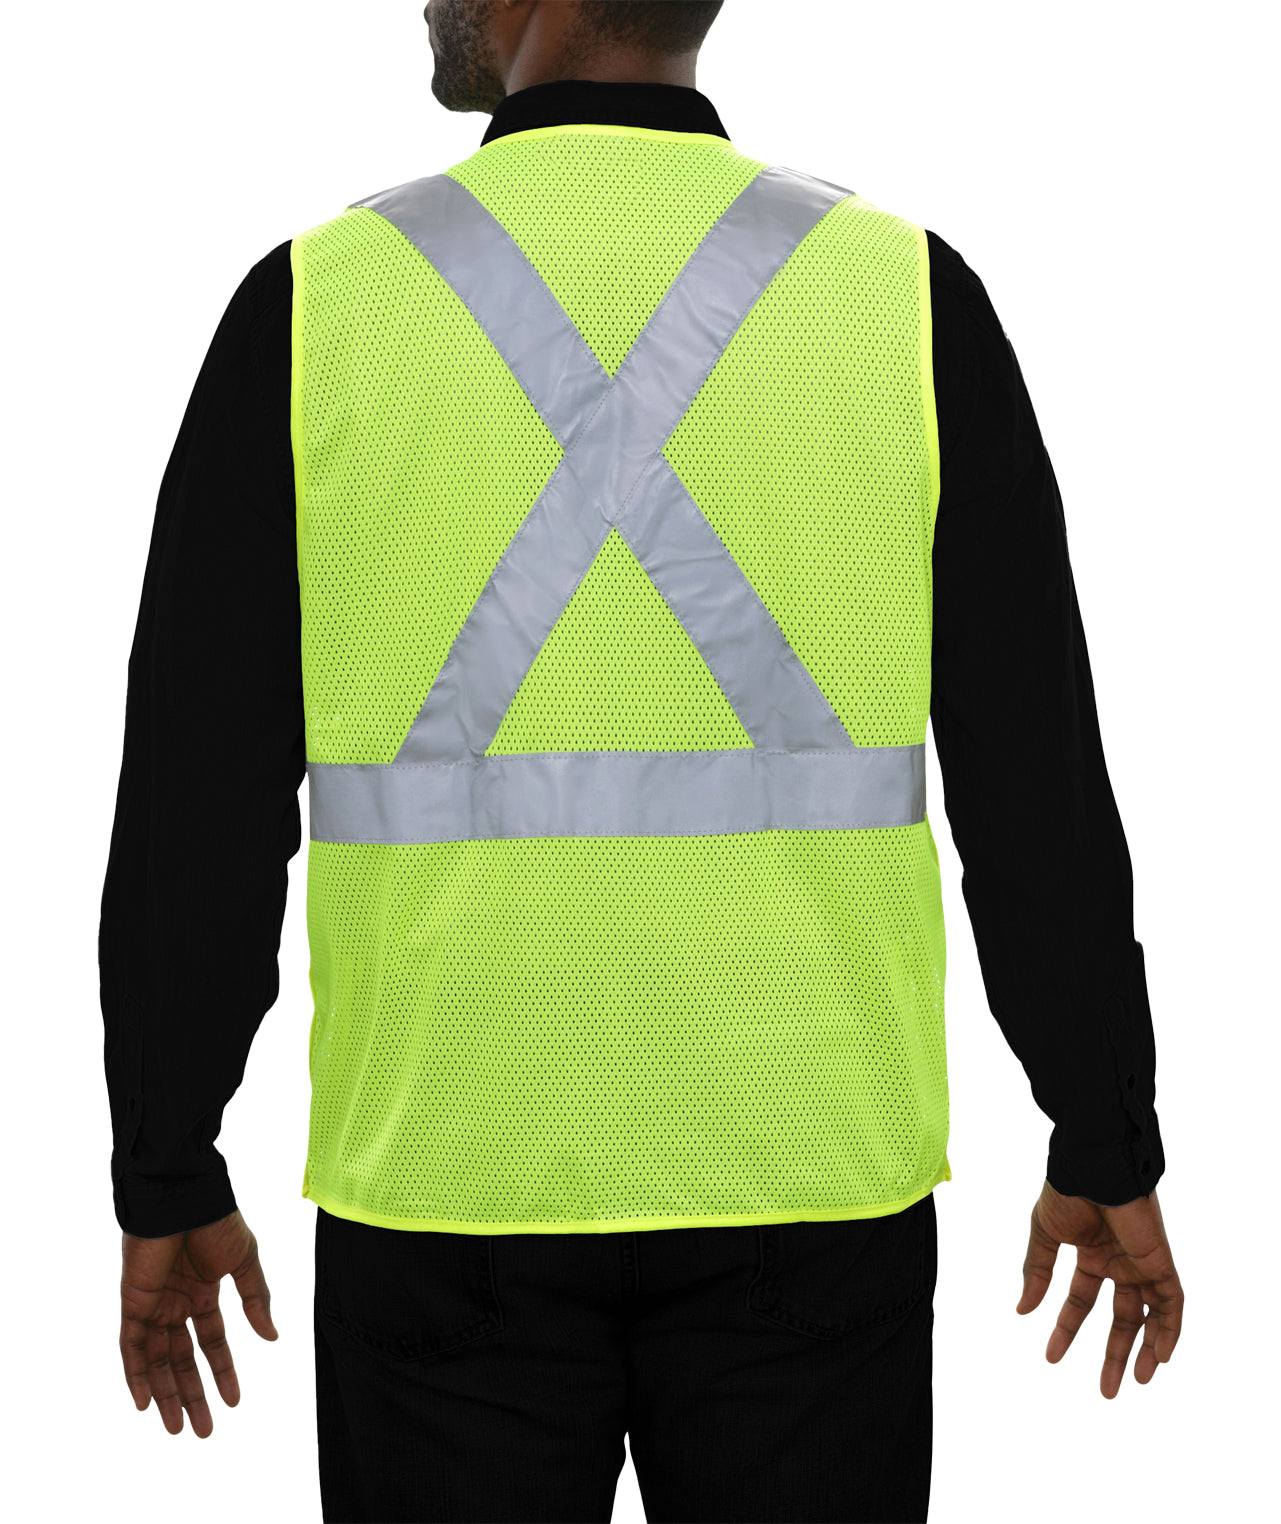 502SXLM Safety Vest: Hi-Vis Vest: X-Back Lime: 5pt Breakaway Mesh: ANSI 2